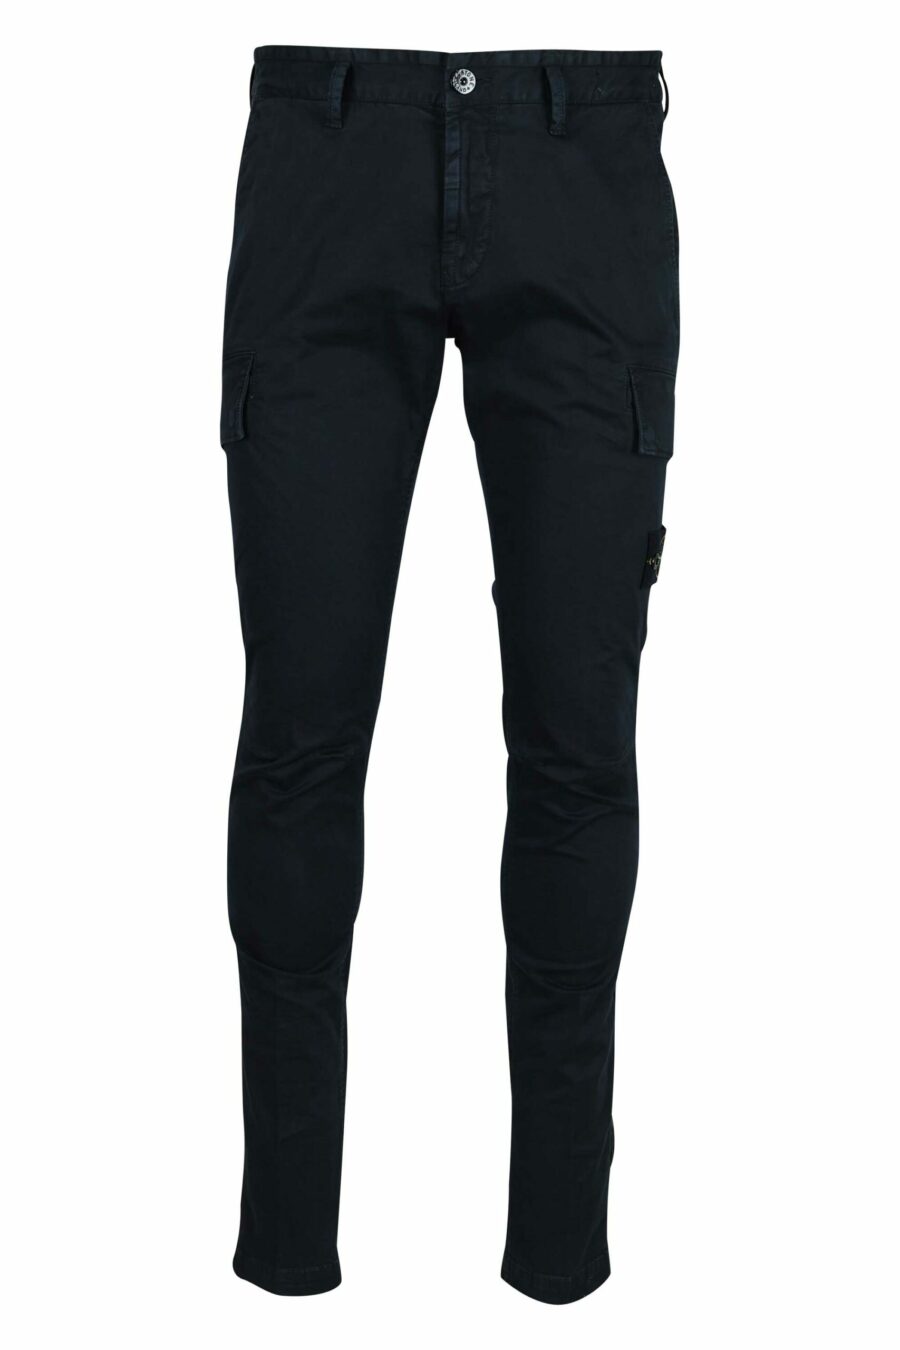 Pantalón azul oscuro "skinny" estilo cargo con logo parche brújula - 8052572938856 scaled